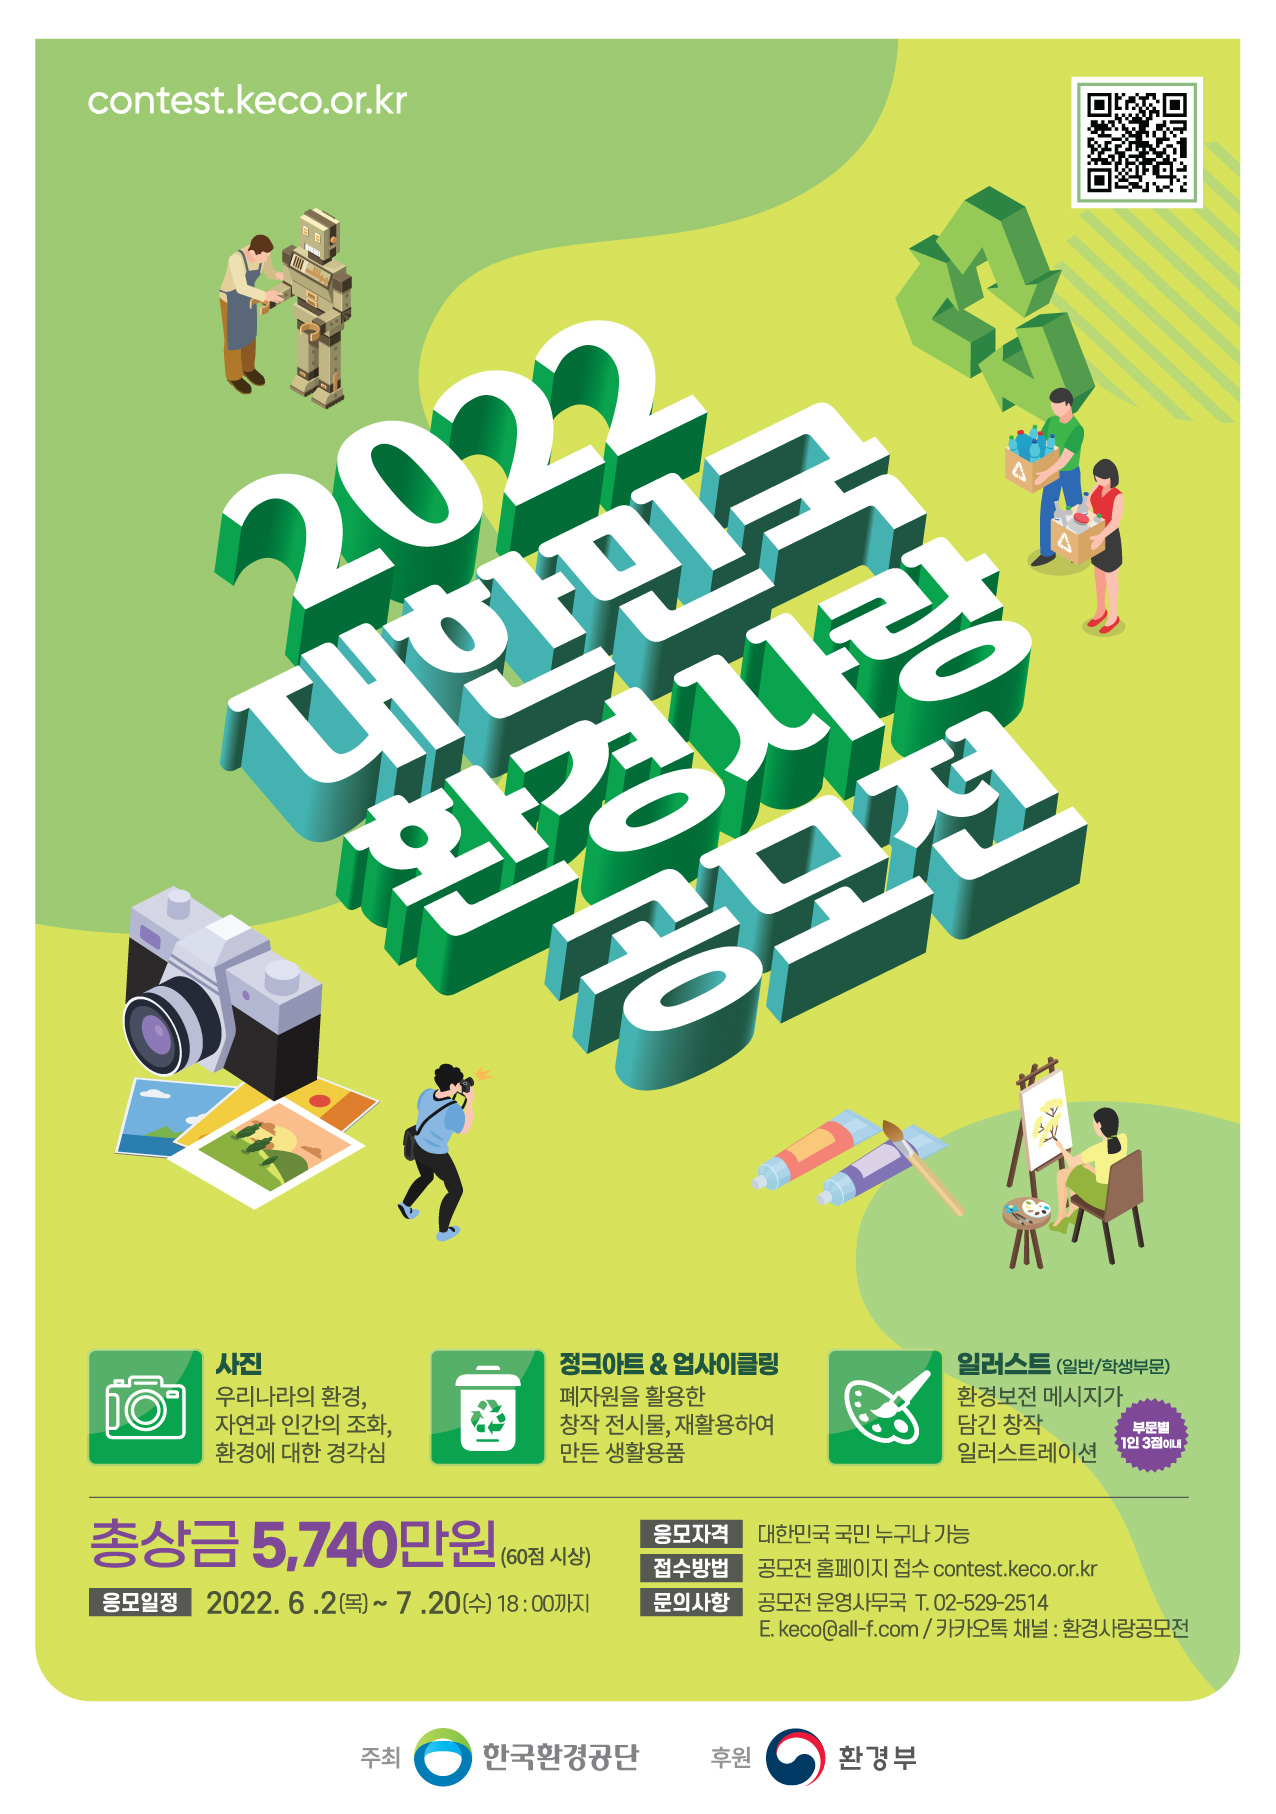 대한민국의 환경복지를 실현하는 한국환경공단이 2020 대한민국 환경사랑 공모전을 개최합니다 환경을 사랑하는 여러분의 도전을 기다립니다